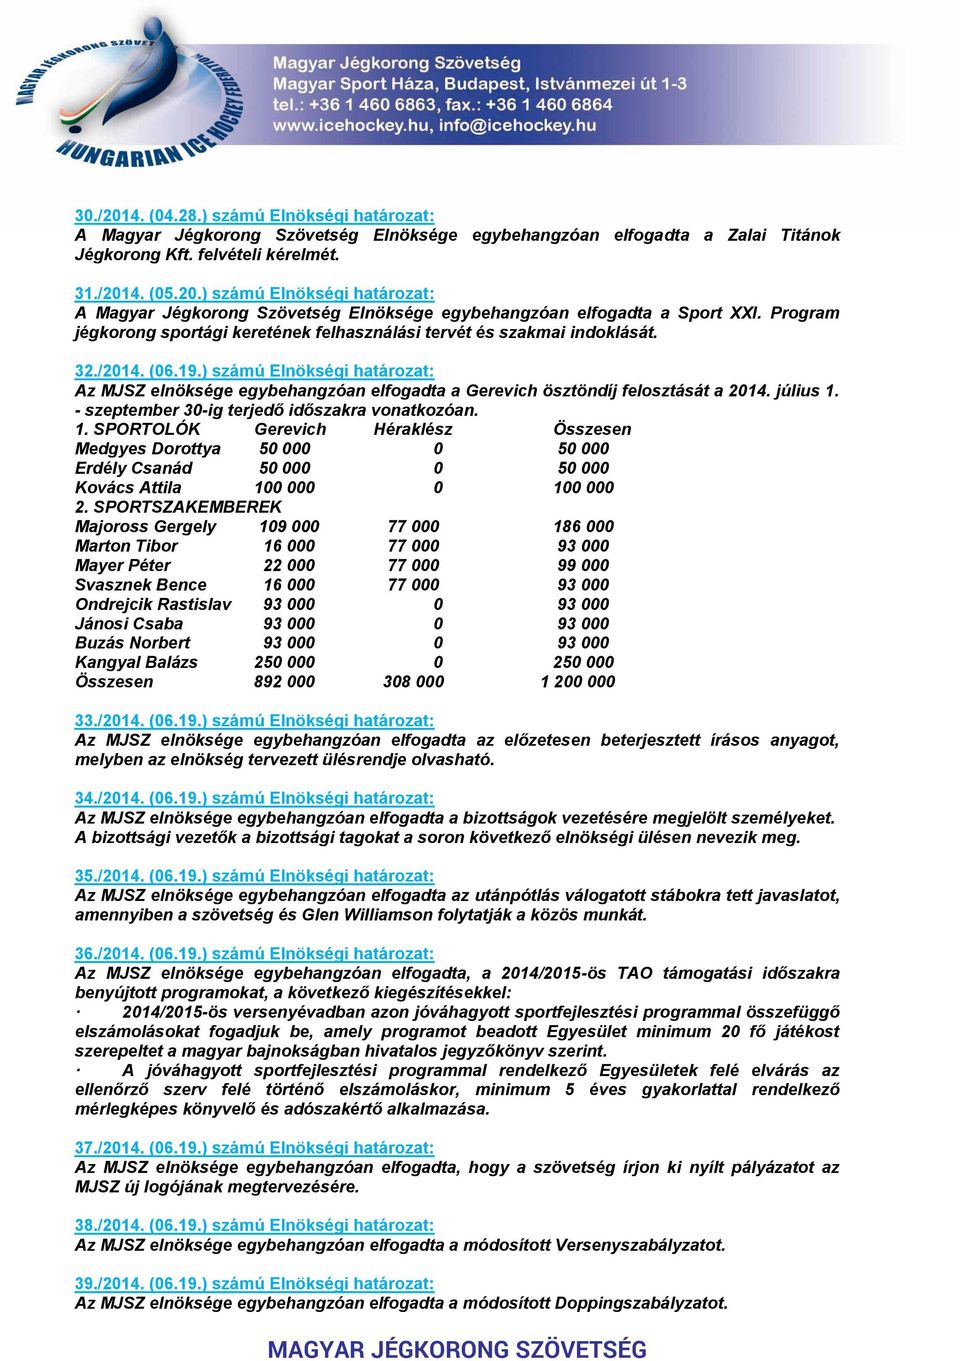 ) számú Elnökségi határozat: Az MJSZ elnöksége egybehangzóan elfogadta a Gerevich ösztöndíj felosztását a 2014. július 1.